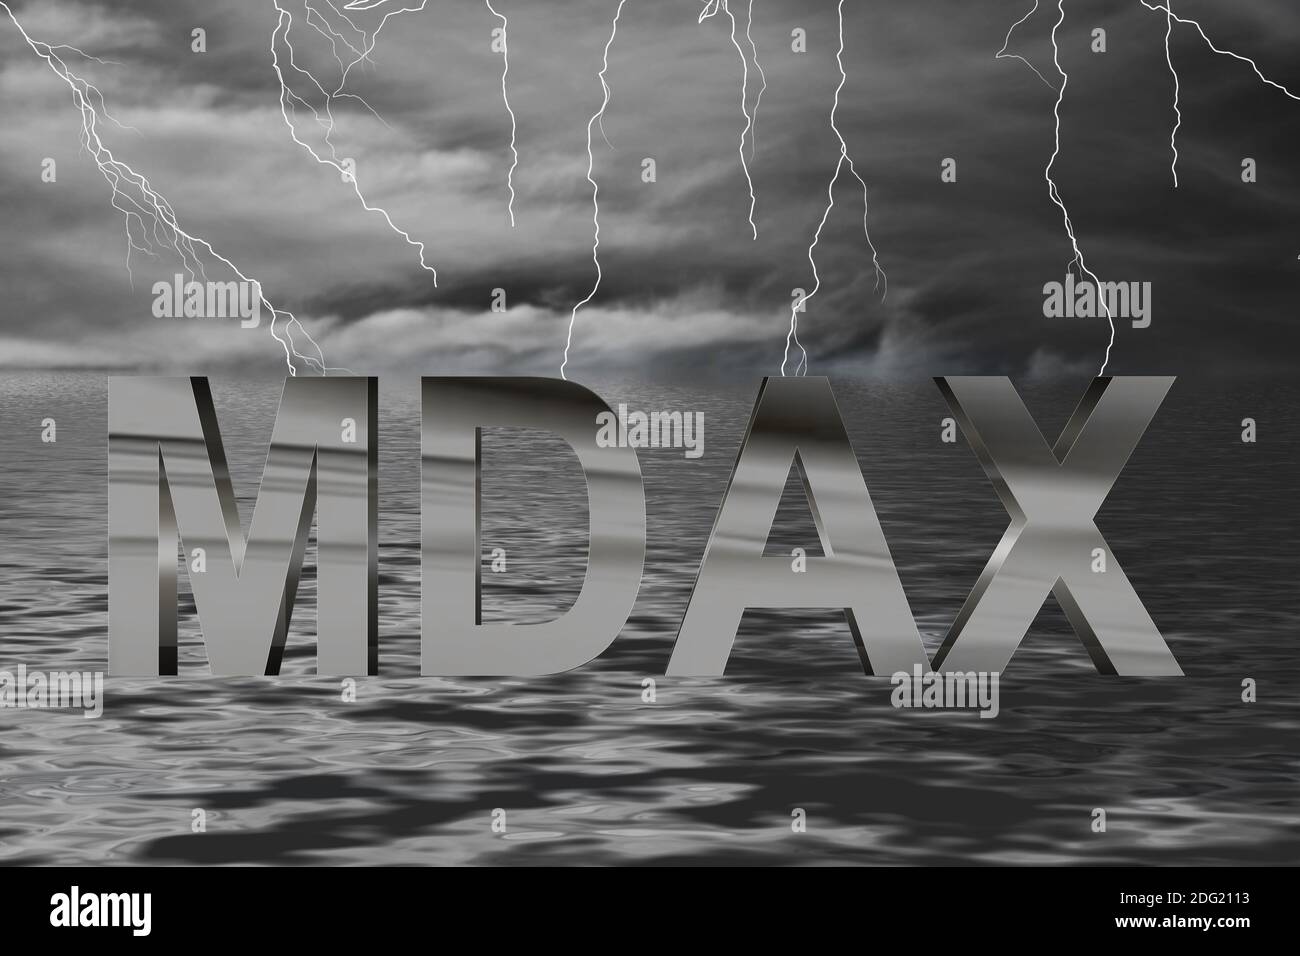 Börse Ozean Gewitter mit Blitzen und Schriftzug MDAX in Chrom Stock Photo